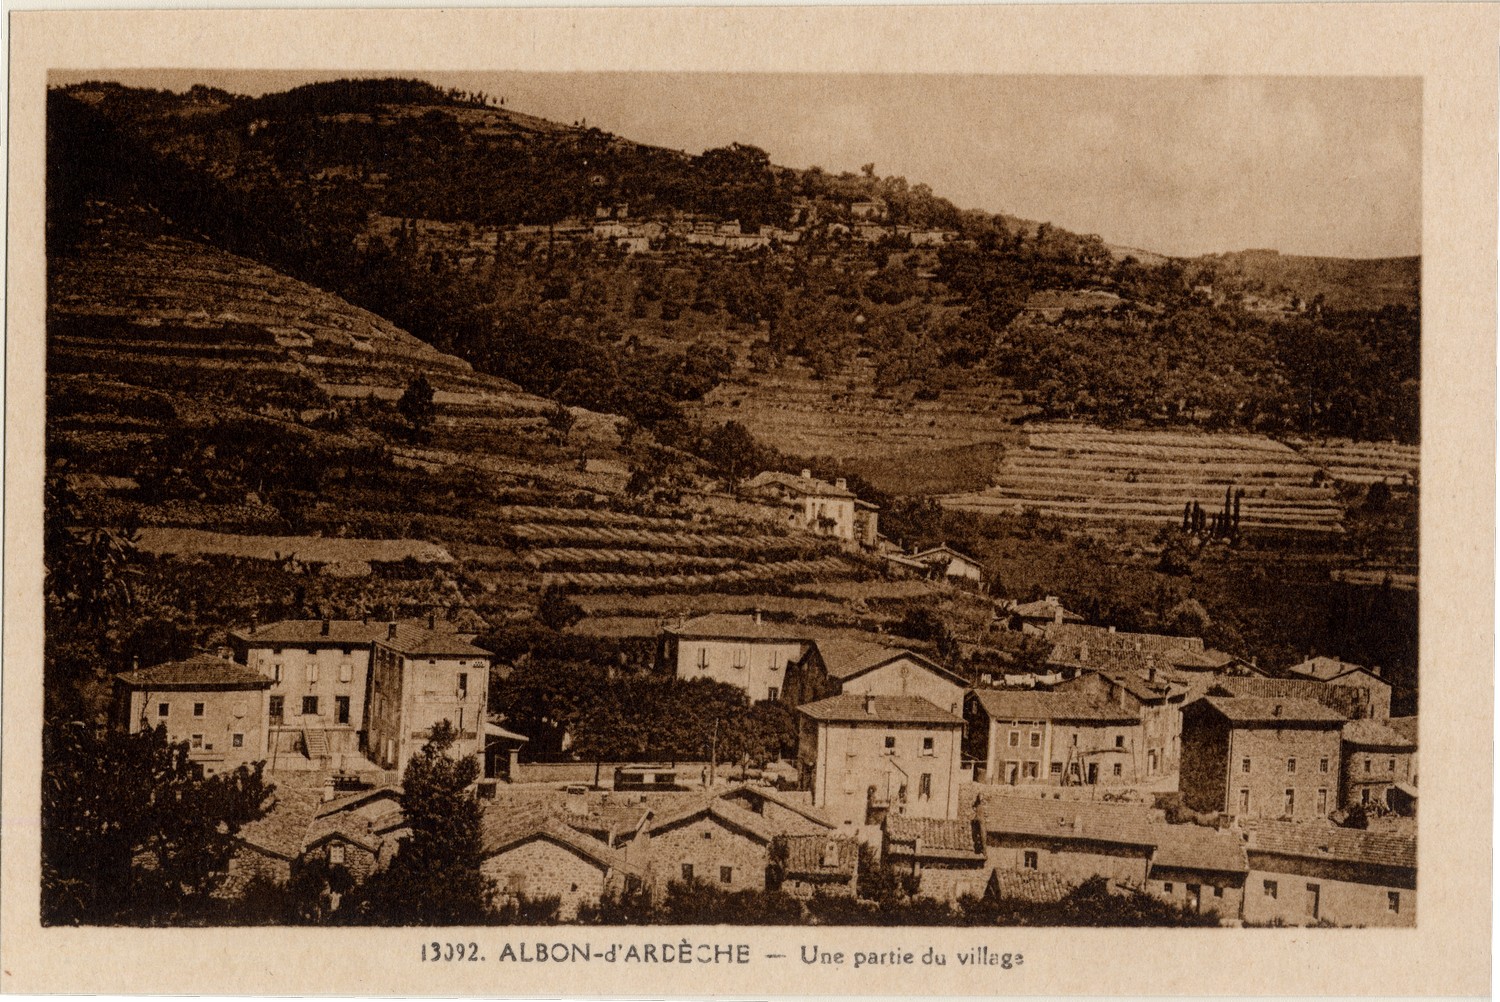 Albon-d'Ardèche - Une partie du village